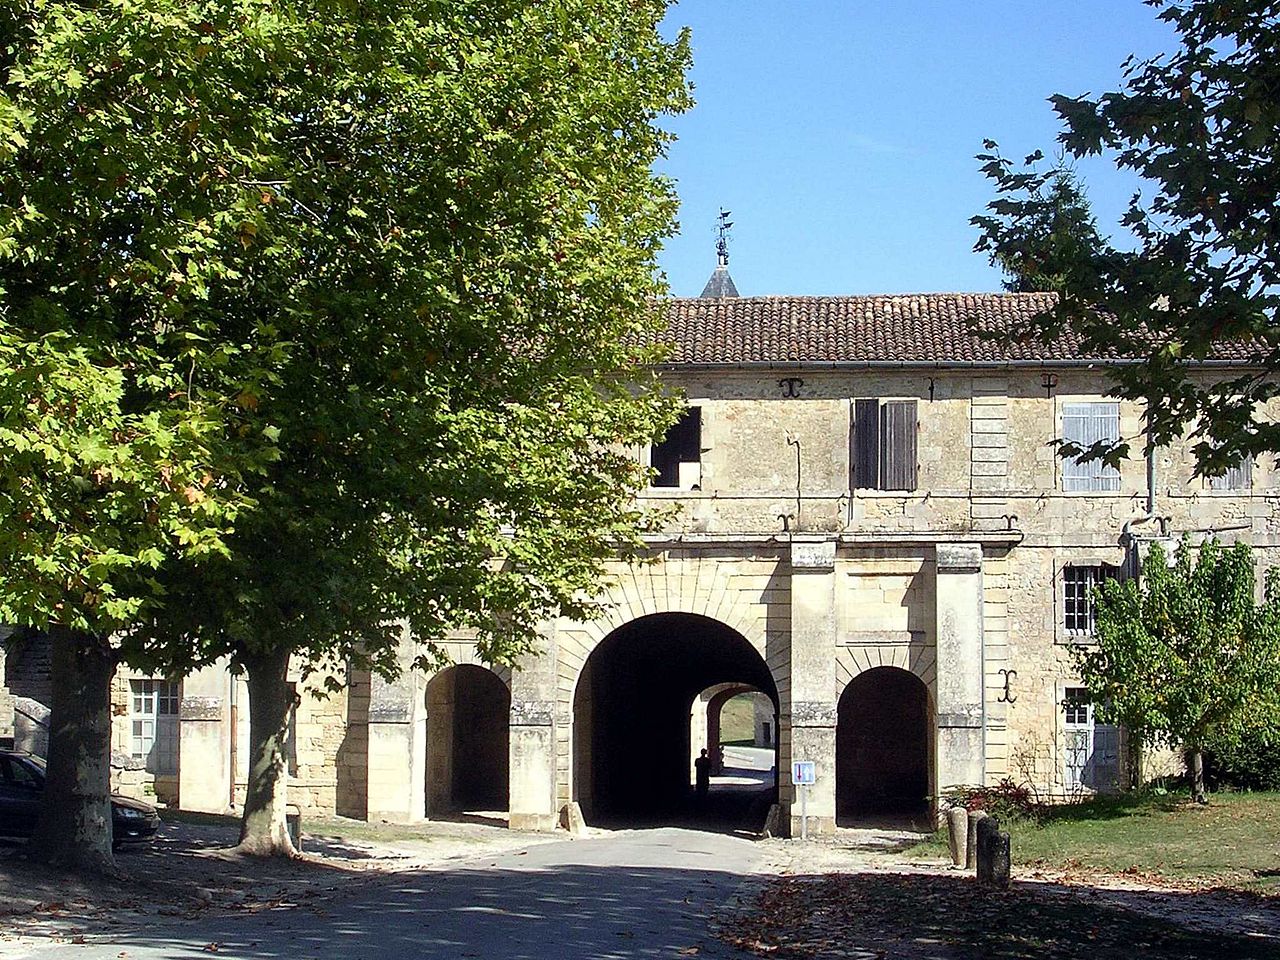 On retrouvre ici la citadelle de Blaye en France, on peut voir sur la photo la porte royale de la citadelle